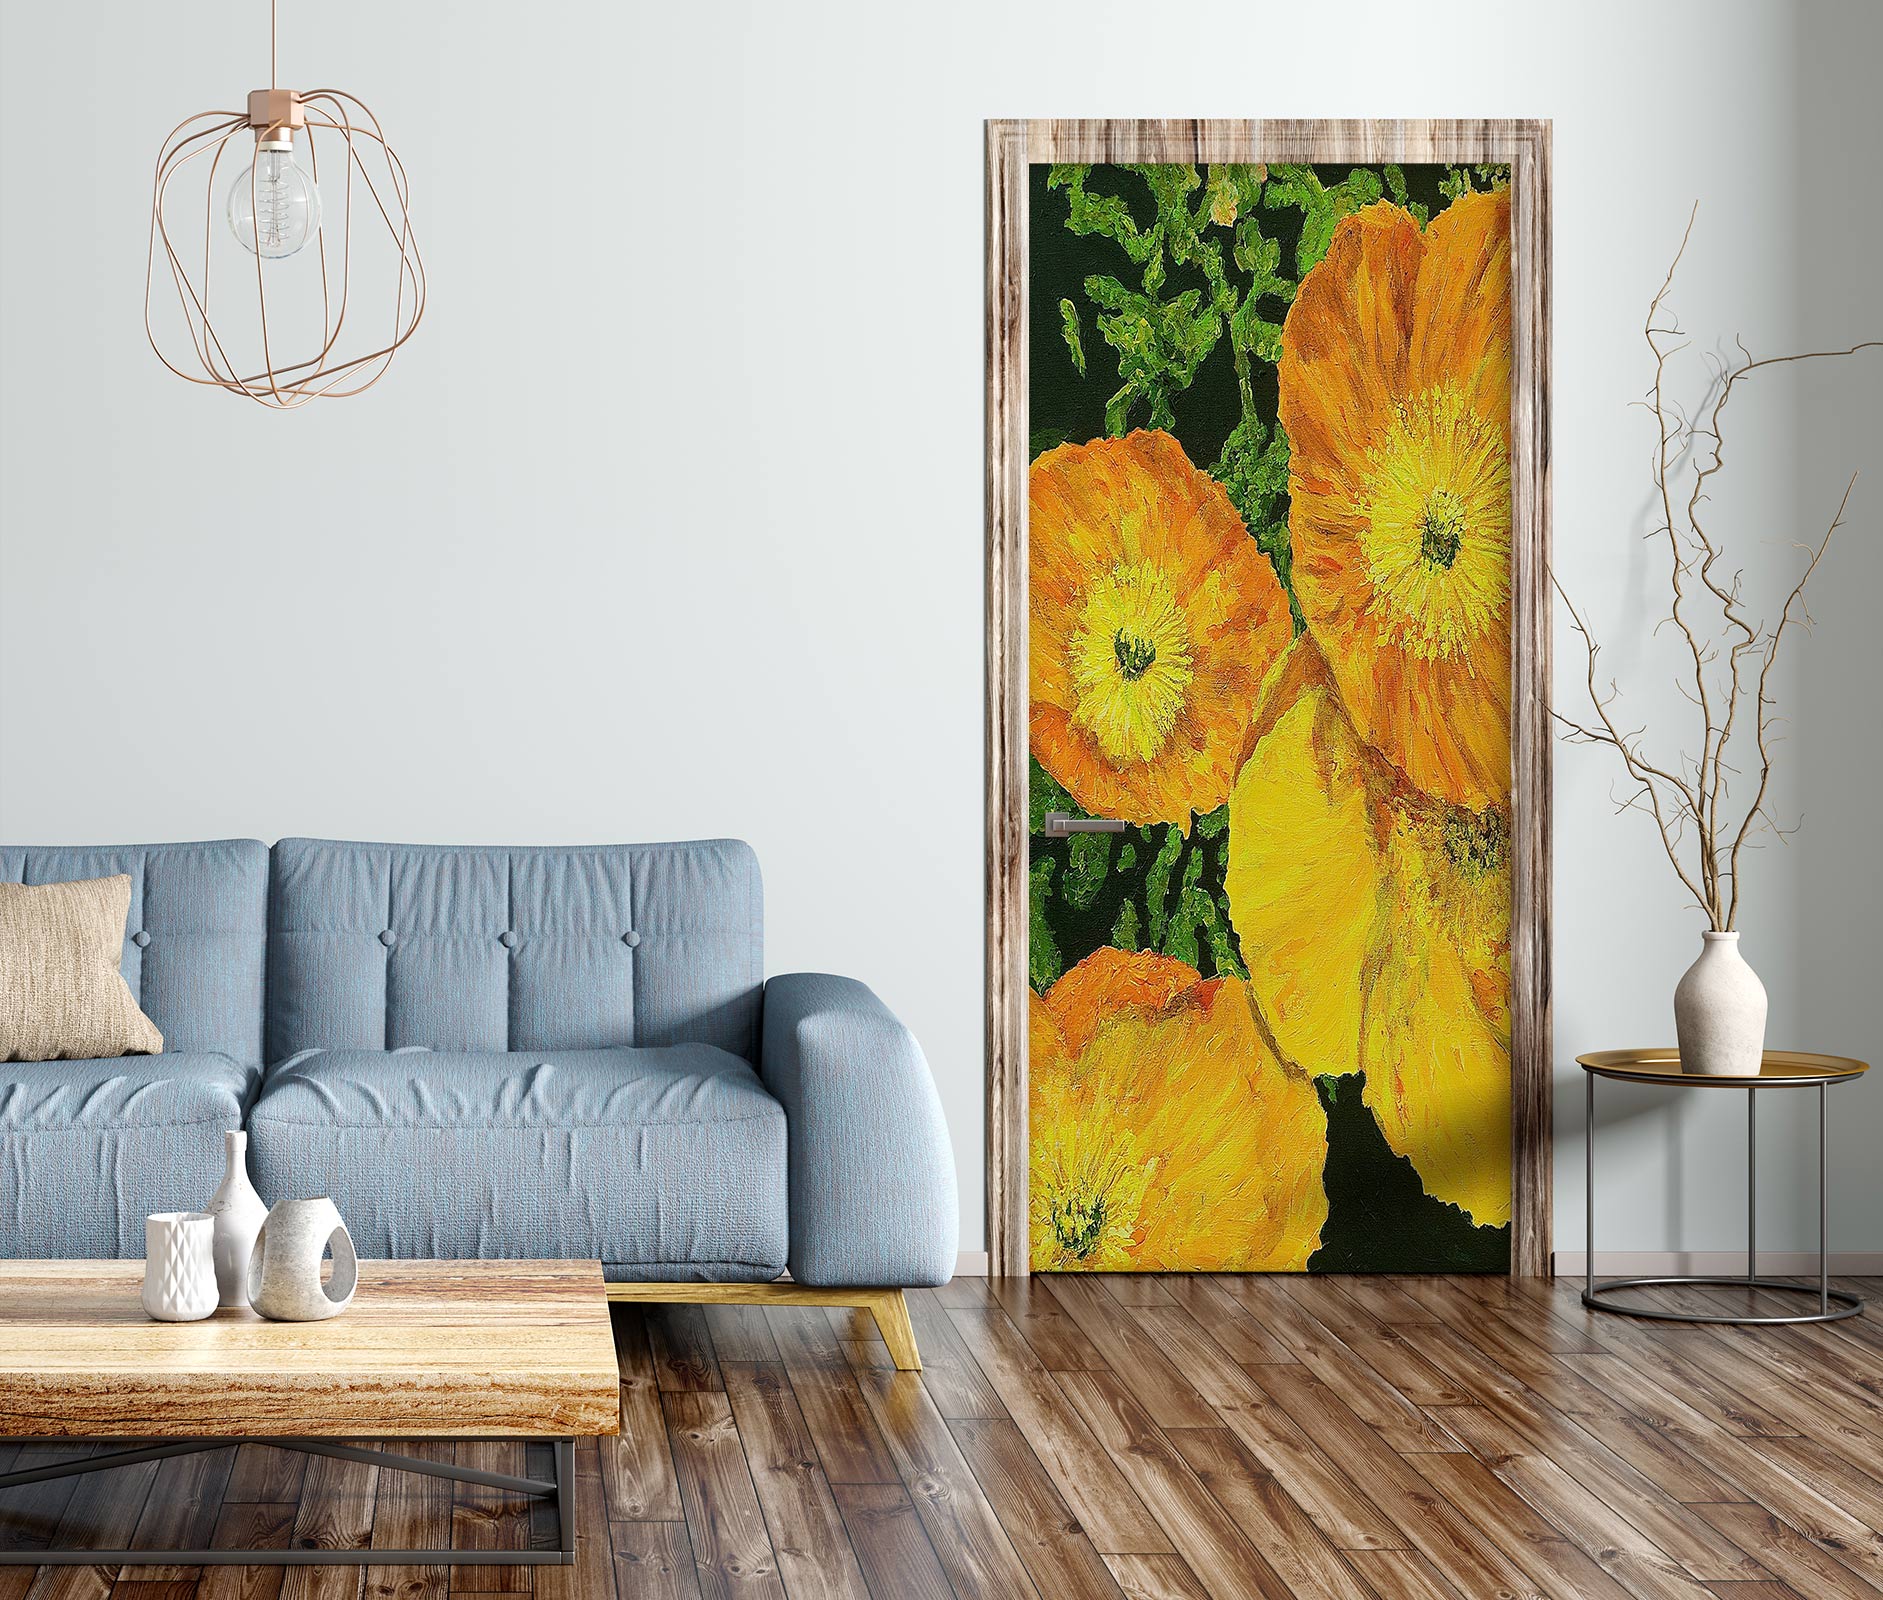 3D Yellow Flowers 9375 Allan P. Friedlander Door Mural